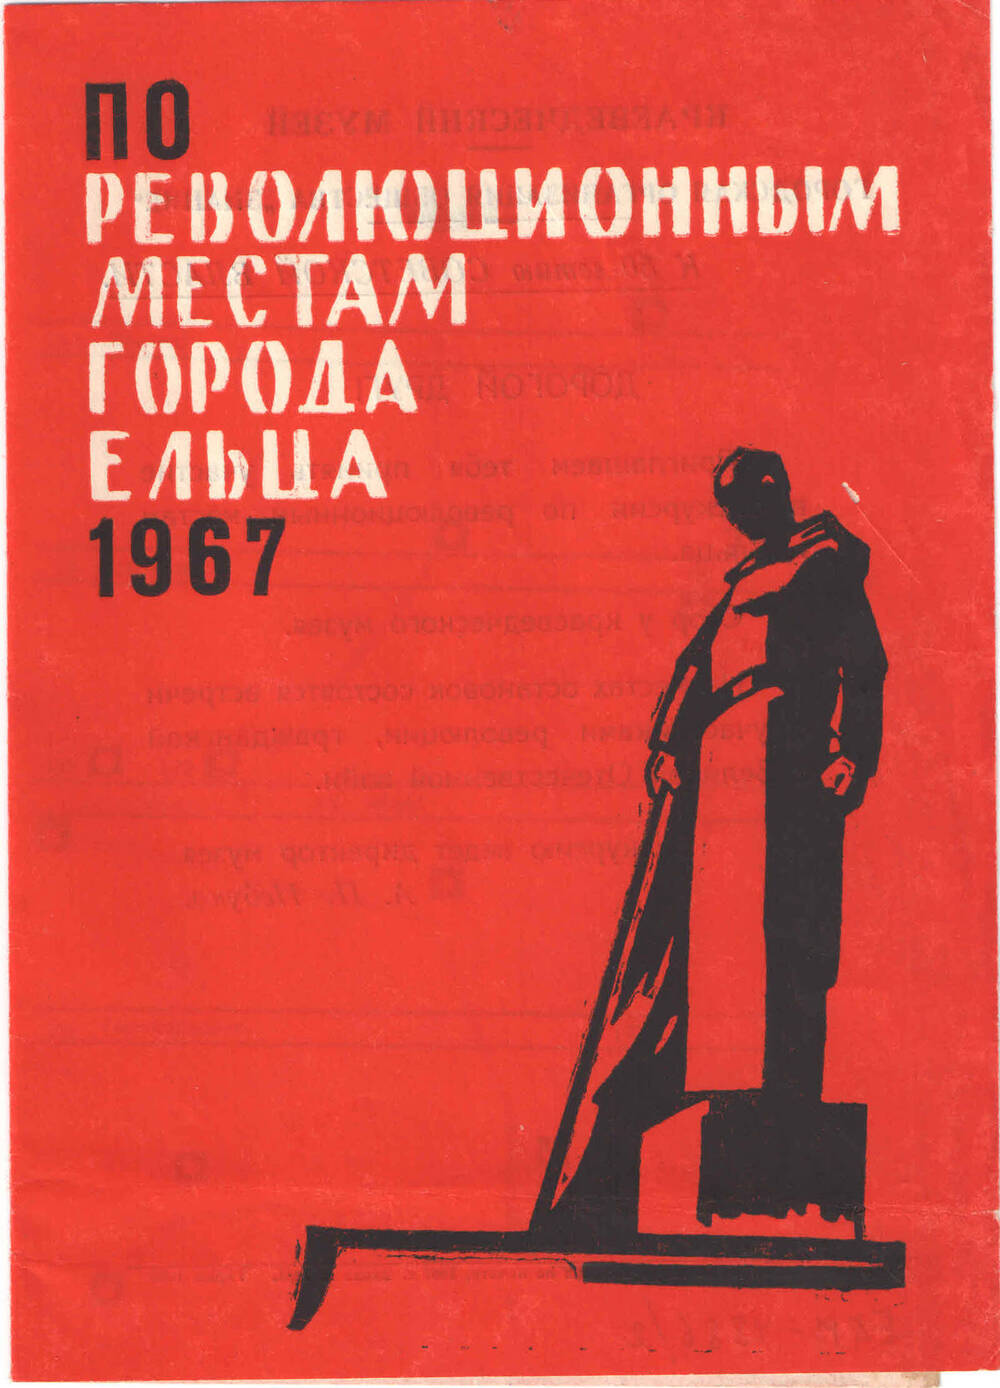 Путеводитель по революционным местам г. Ельца  - 1967  г.